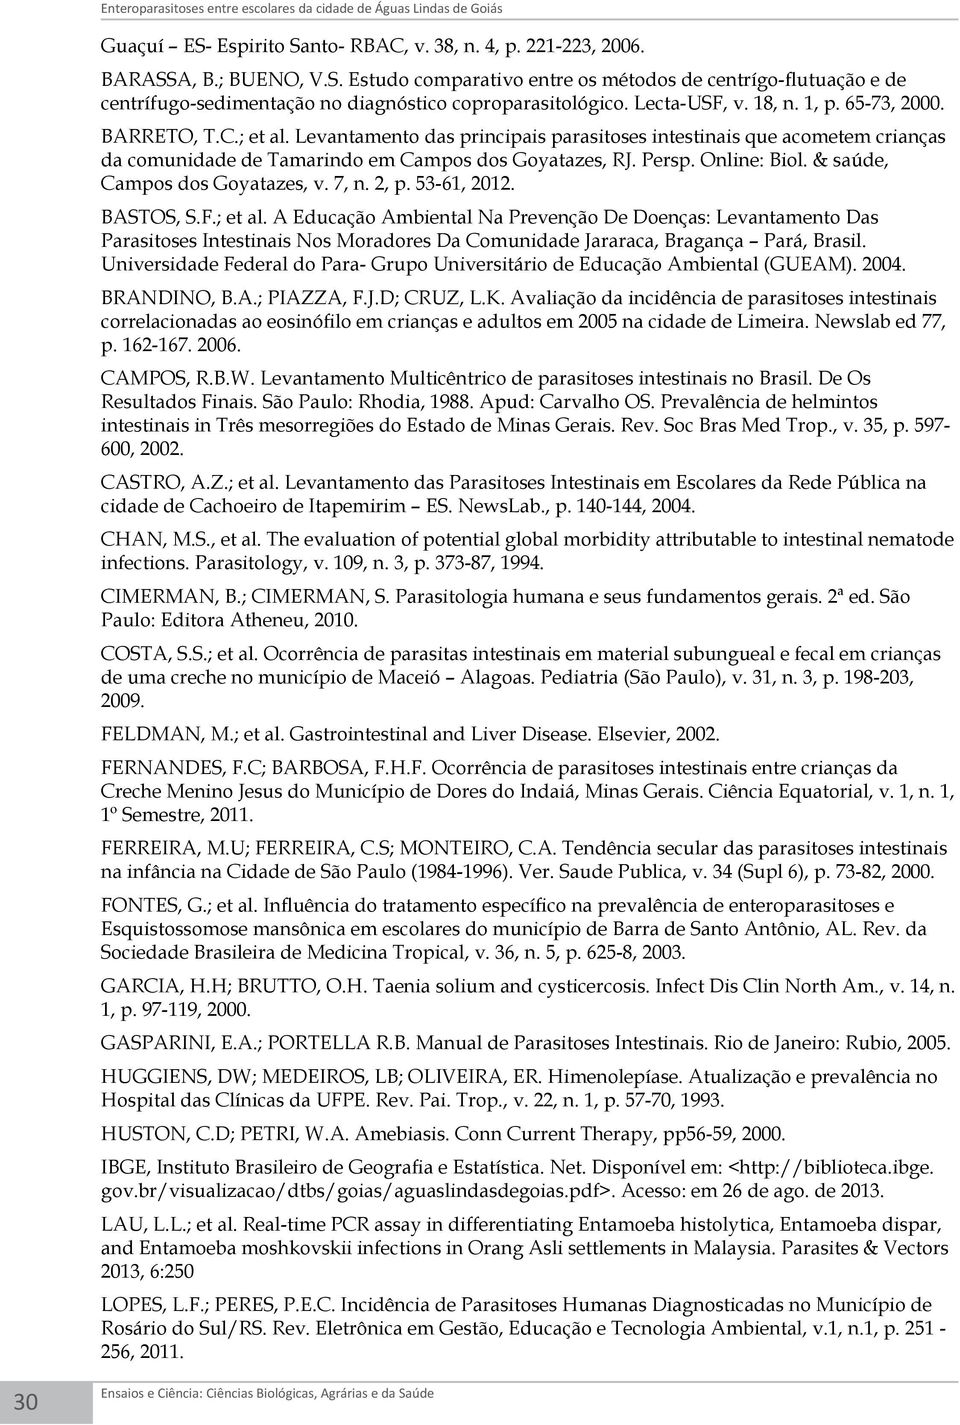 Lecta-USF, v. 18, n. 1, p. 65-73, 2000. BARRETO, T.C.; et al. Levantamento das principais parasitoses intestinais que acometem crianças da comunidade de Tamarindo em Campos dos Goyatazes, RJ. Persp.